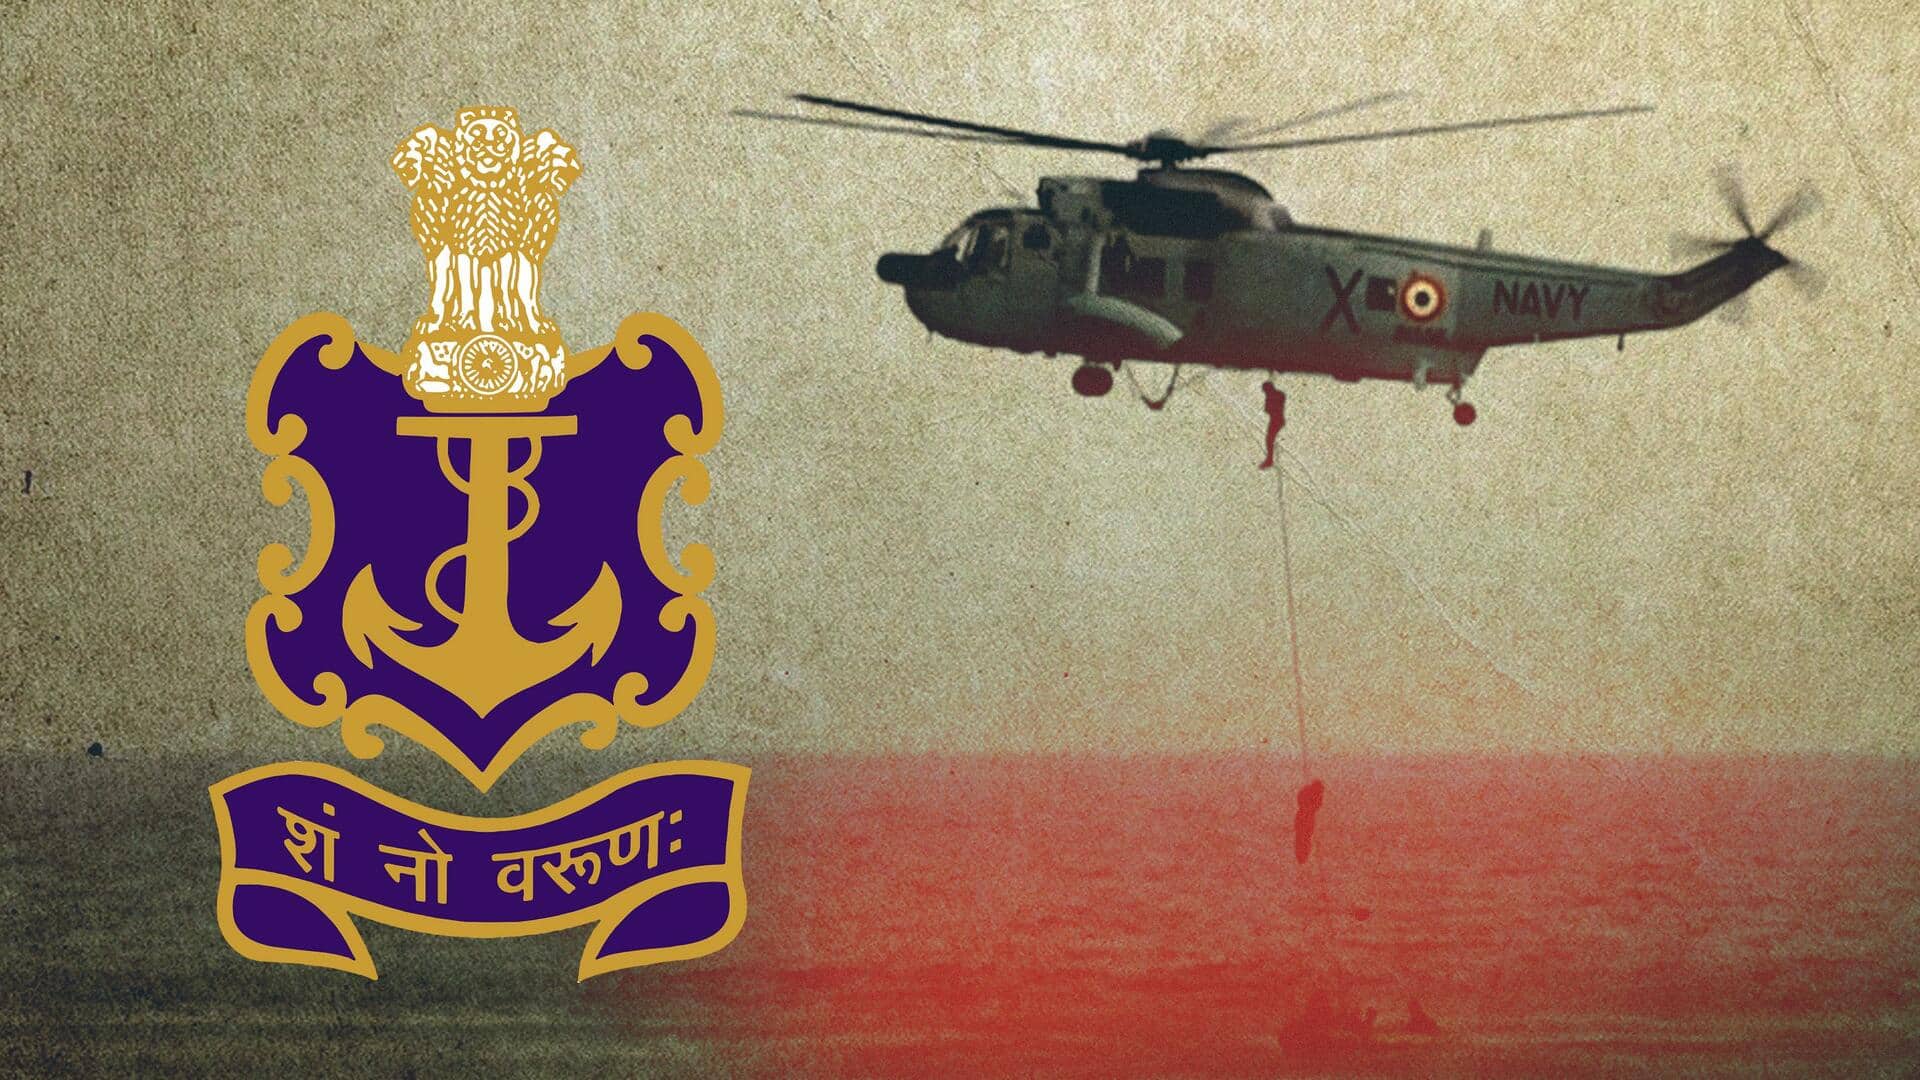 भारतीय नौसेना के हेलीकॉप्टर की मुंबई तट पर आपातकालीन लैंडिंग, 3 सदस्यीय दल सुरक्षित